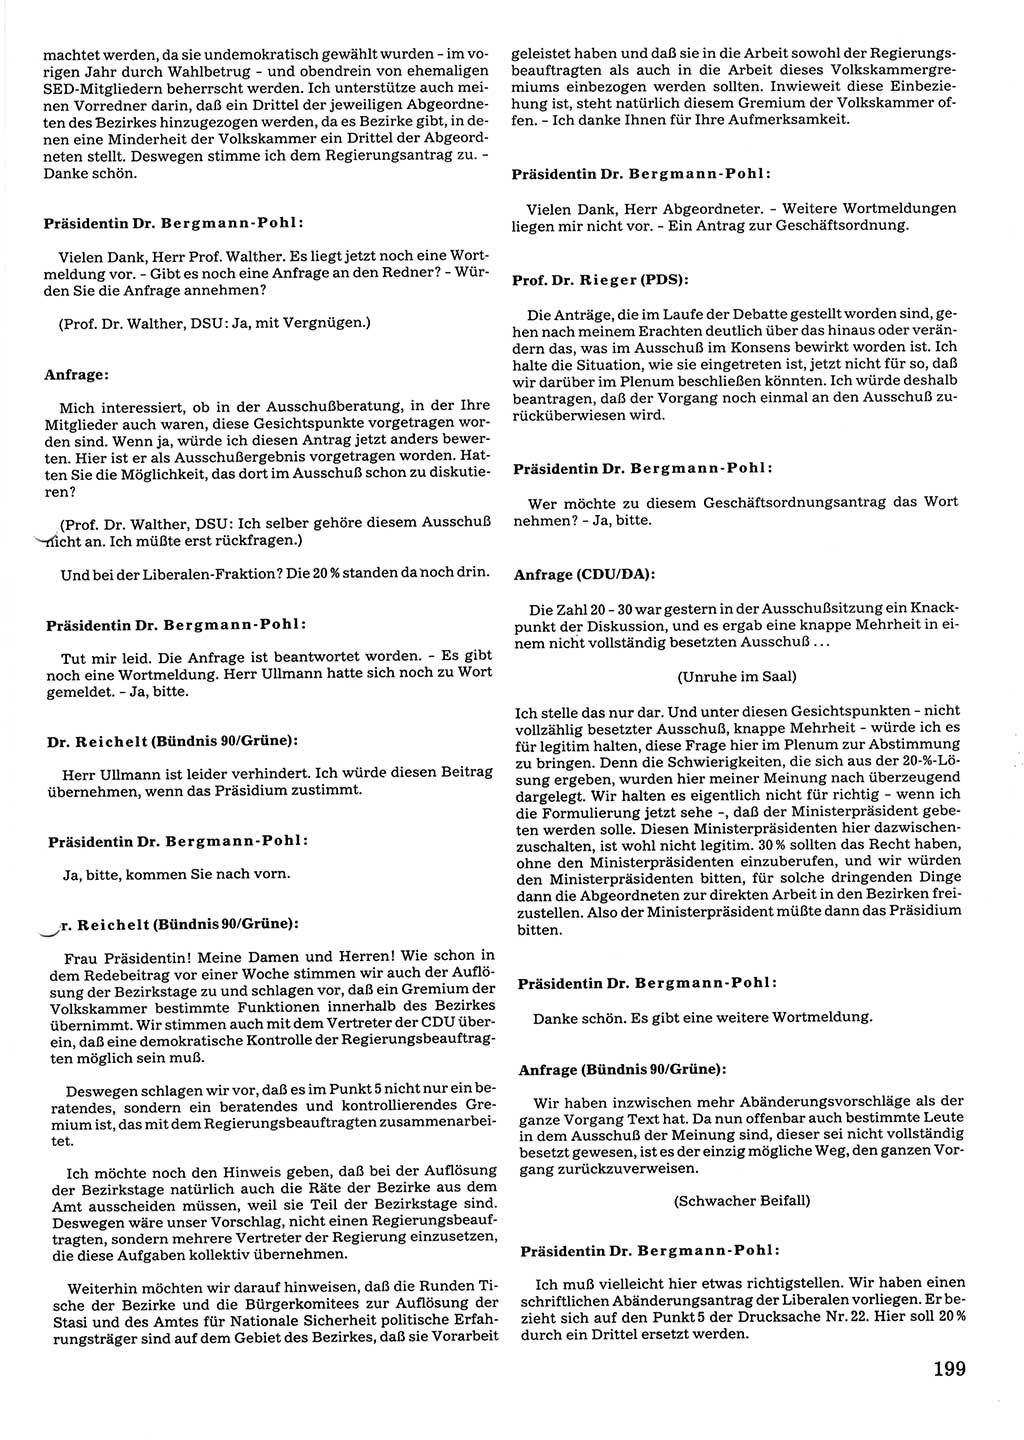 Tagungen der Volkskammer (VK) der Deutschen Demokratischen Republik (DDR), 10. Wahlperiode 1990, Seite 199 (VK. DDR 10. WP. 1990, Prot. Tg. 1-38, 5.4.-2.10.1990, S. 199)